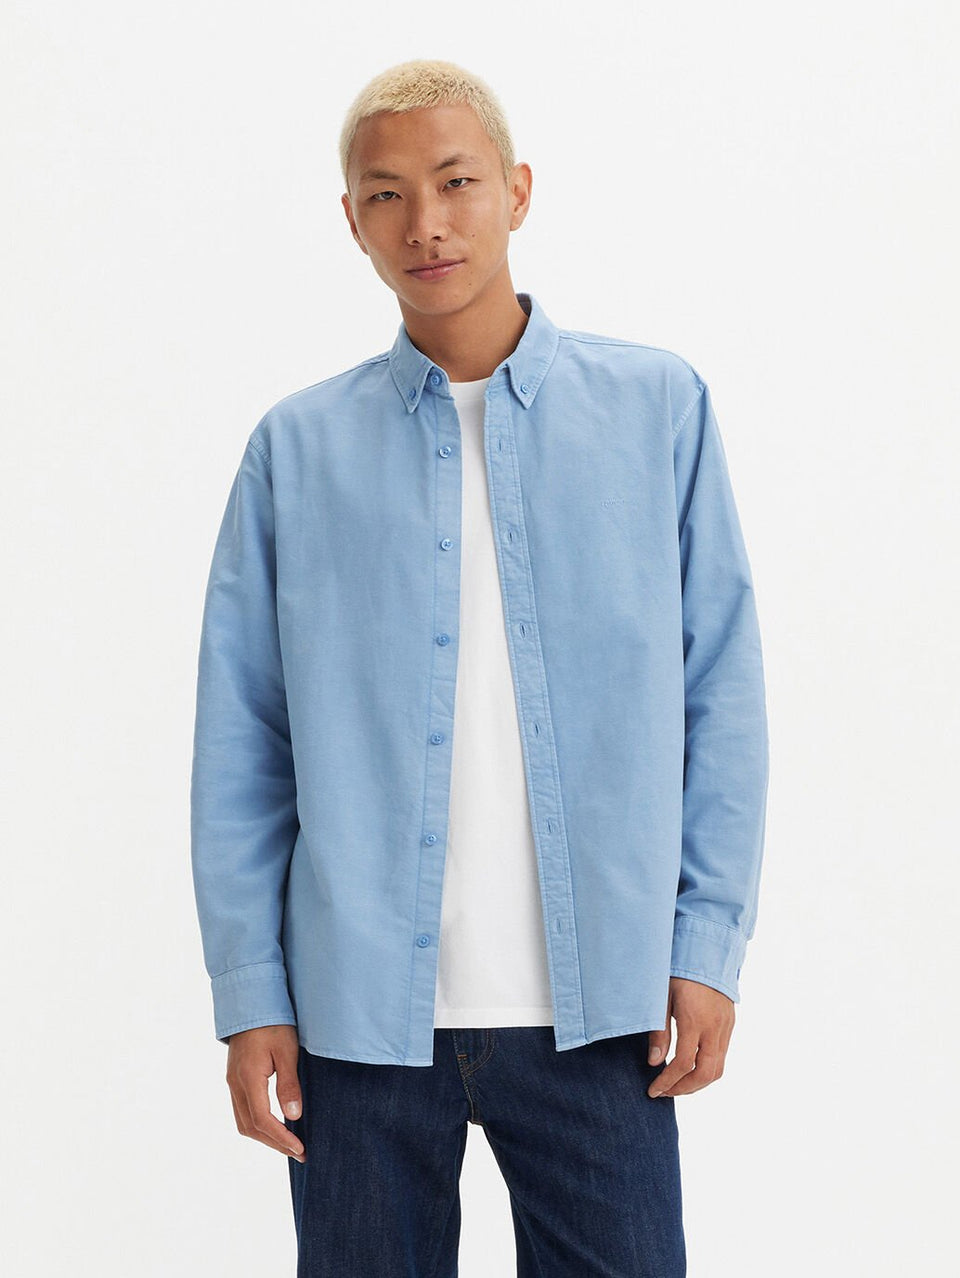 Levis Men's Authentic Button Down Shirt Allure Garment Dyed